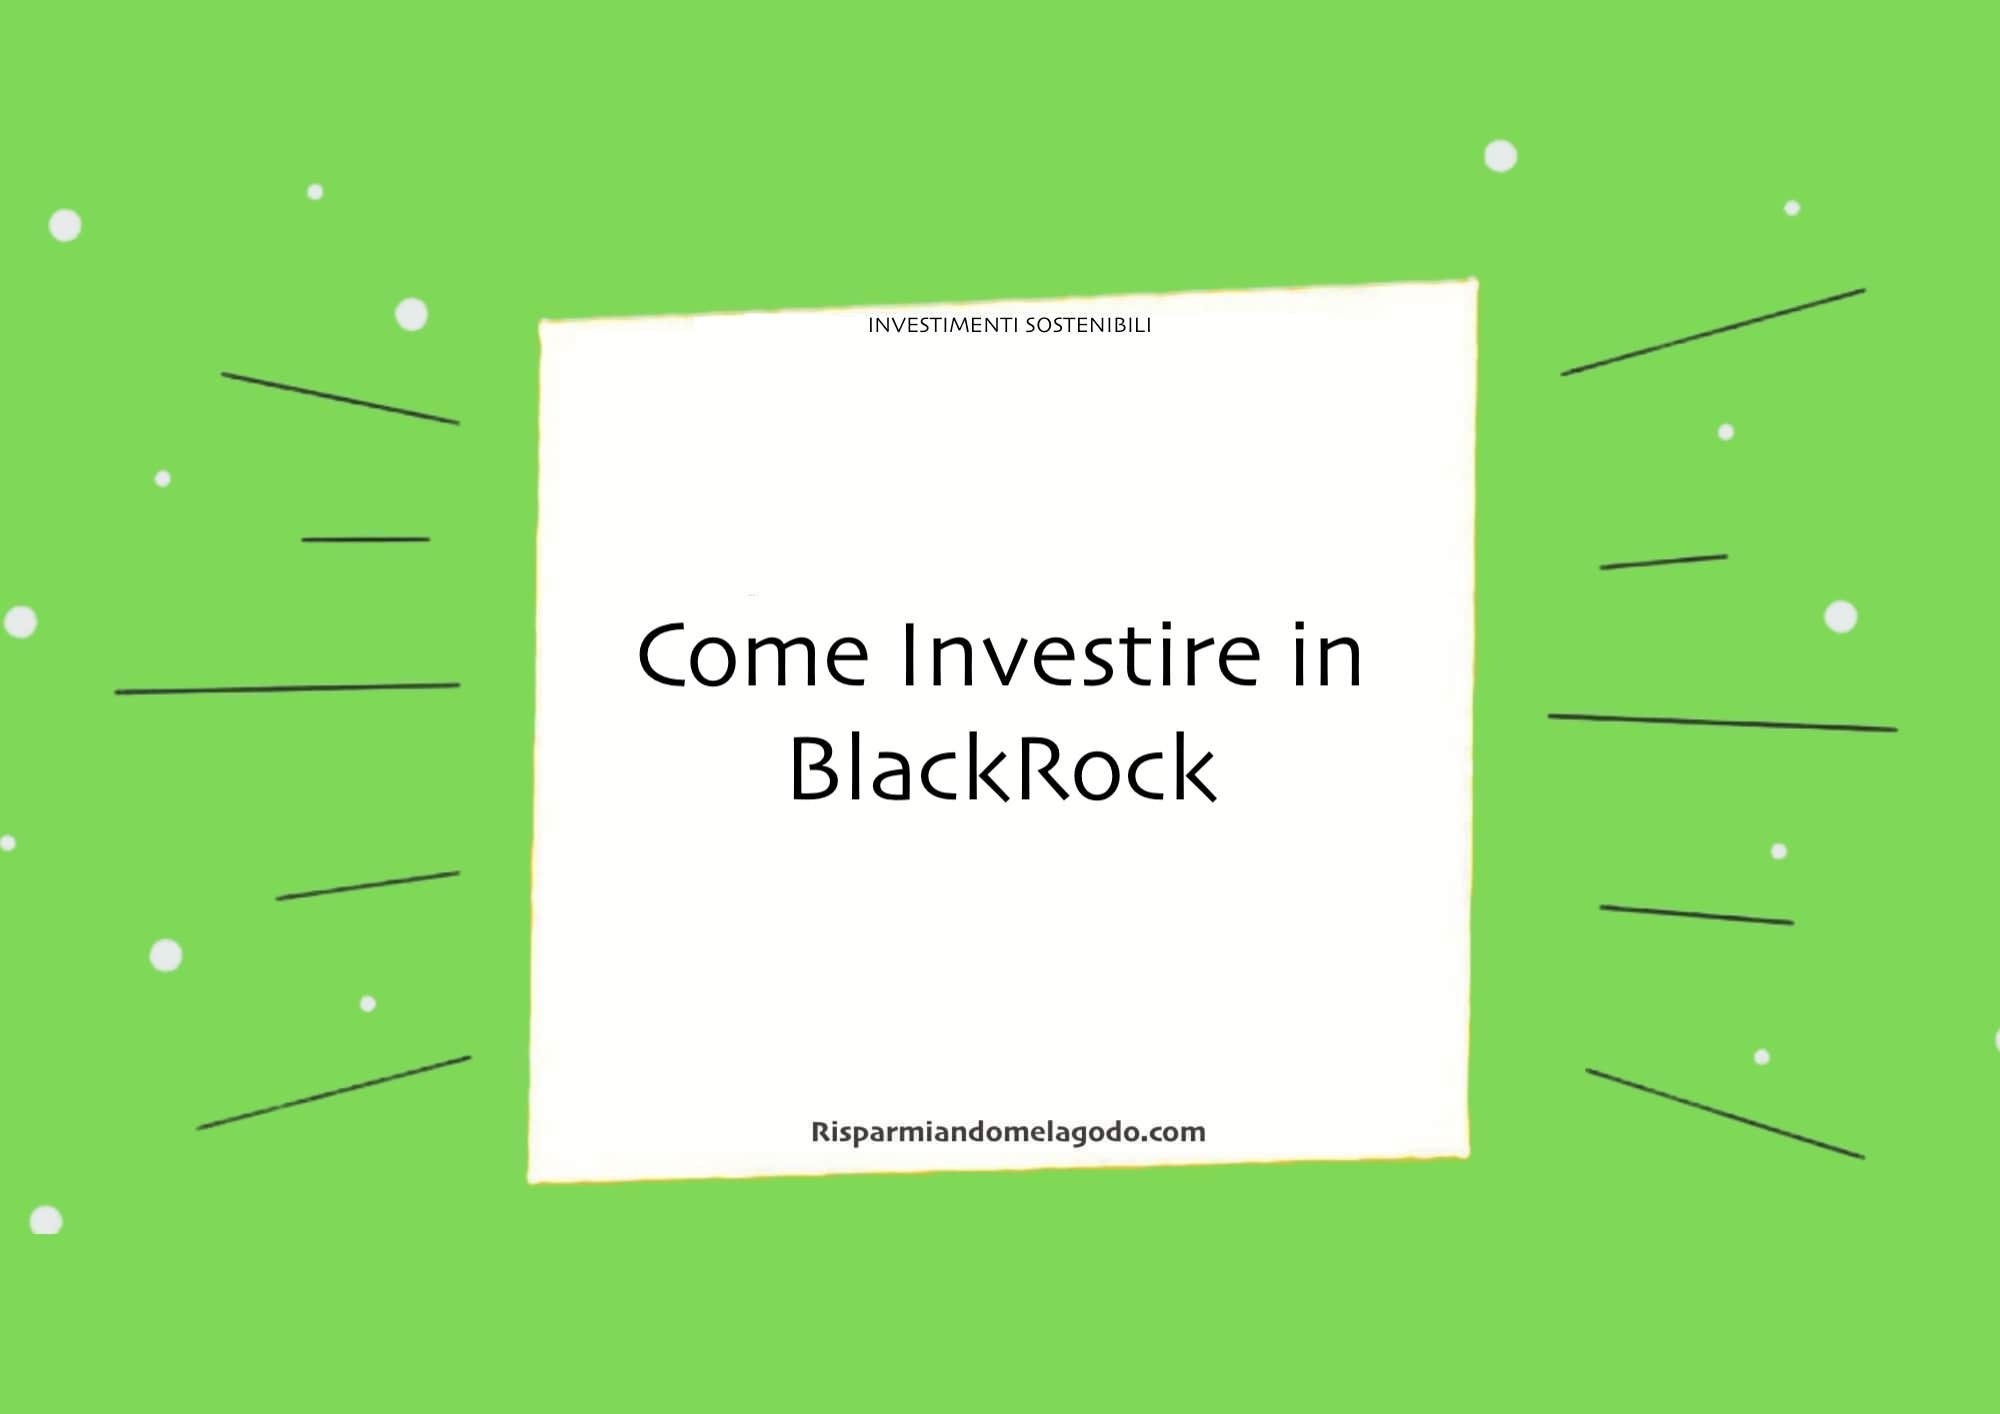 Come Investire in BlackRock